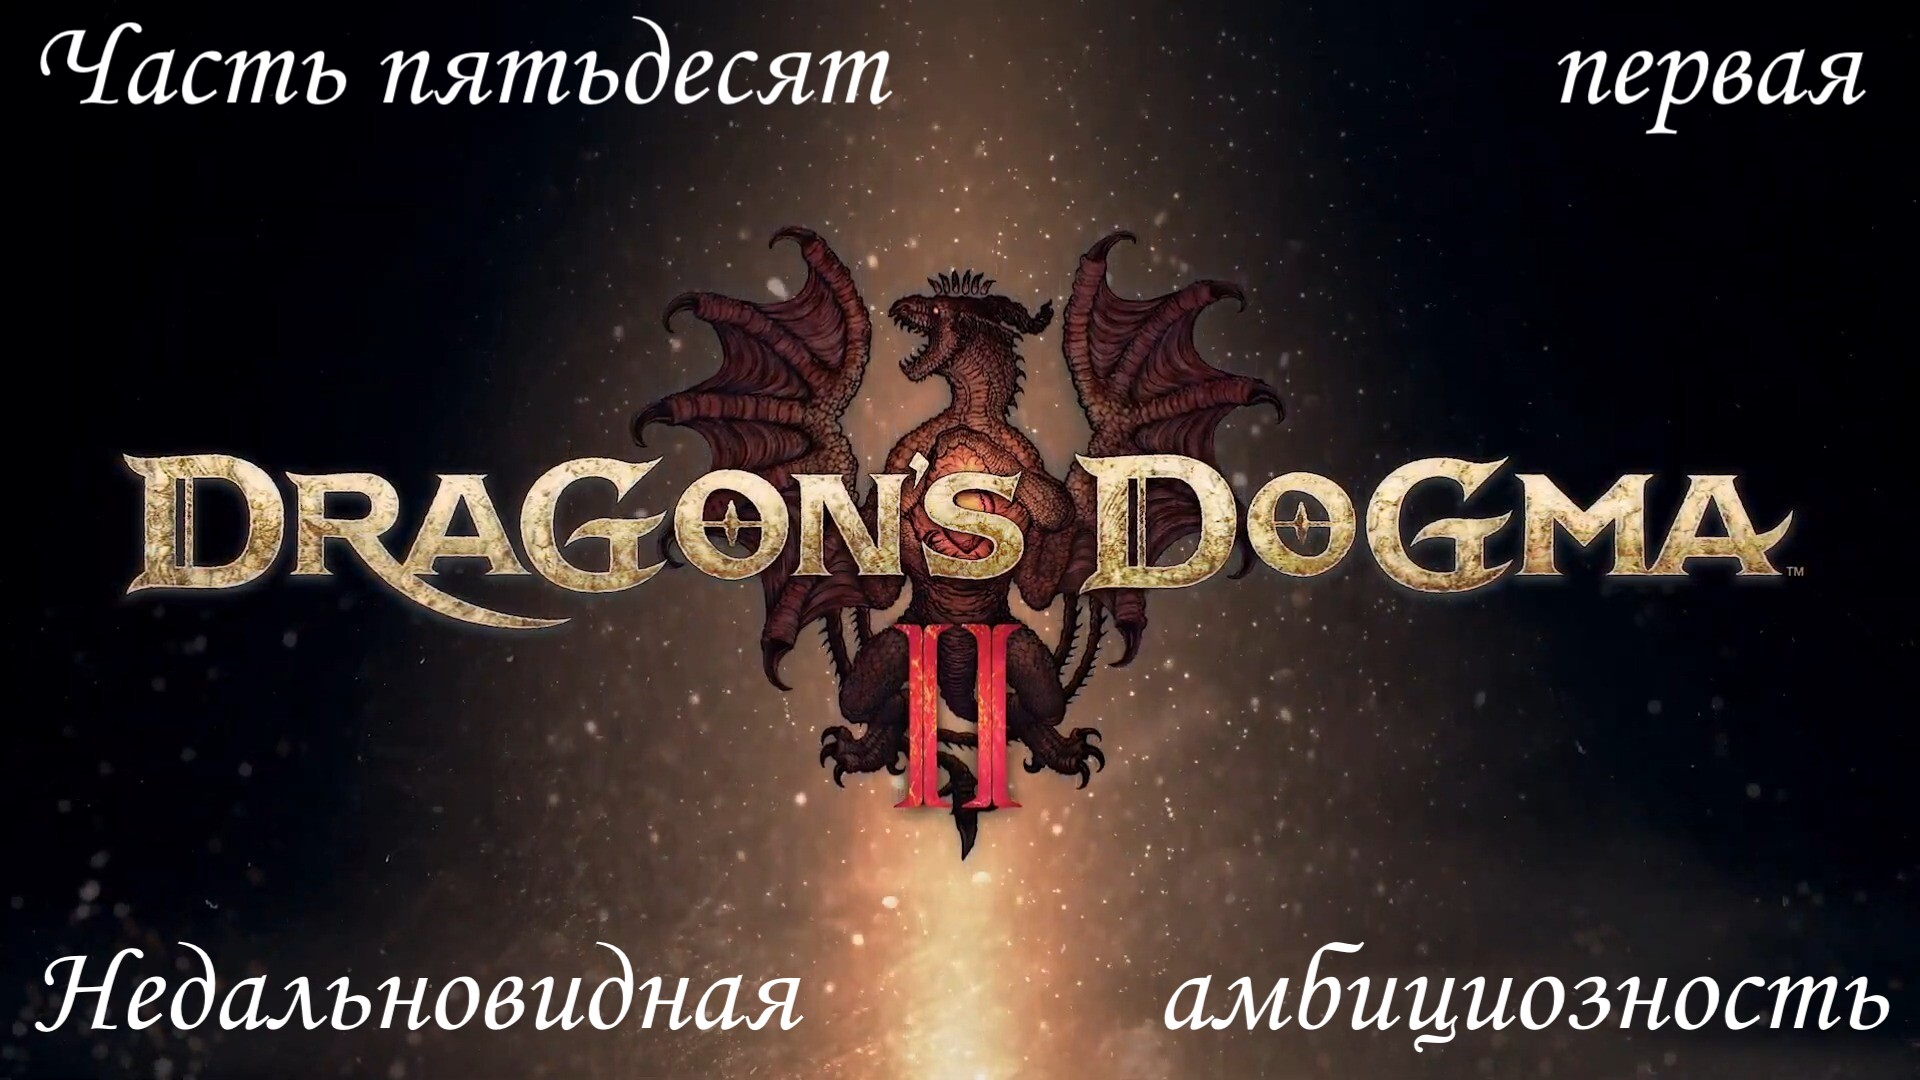 Прохождение Dragons Dogma 2 на русском - Часть пятьдесят первая. Недальновидная амбициозность